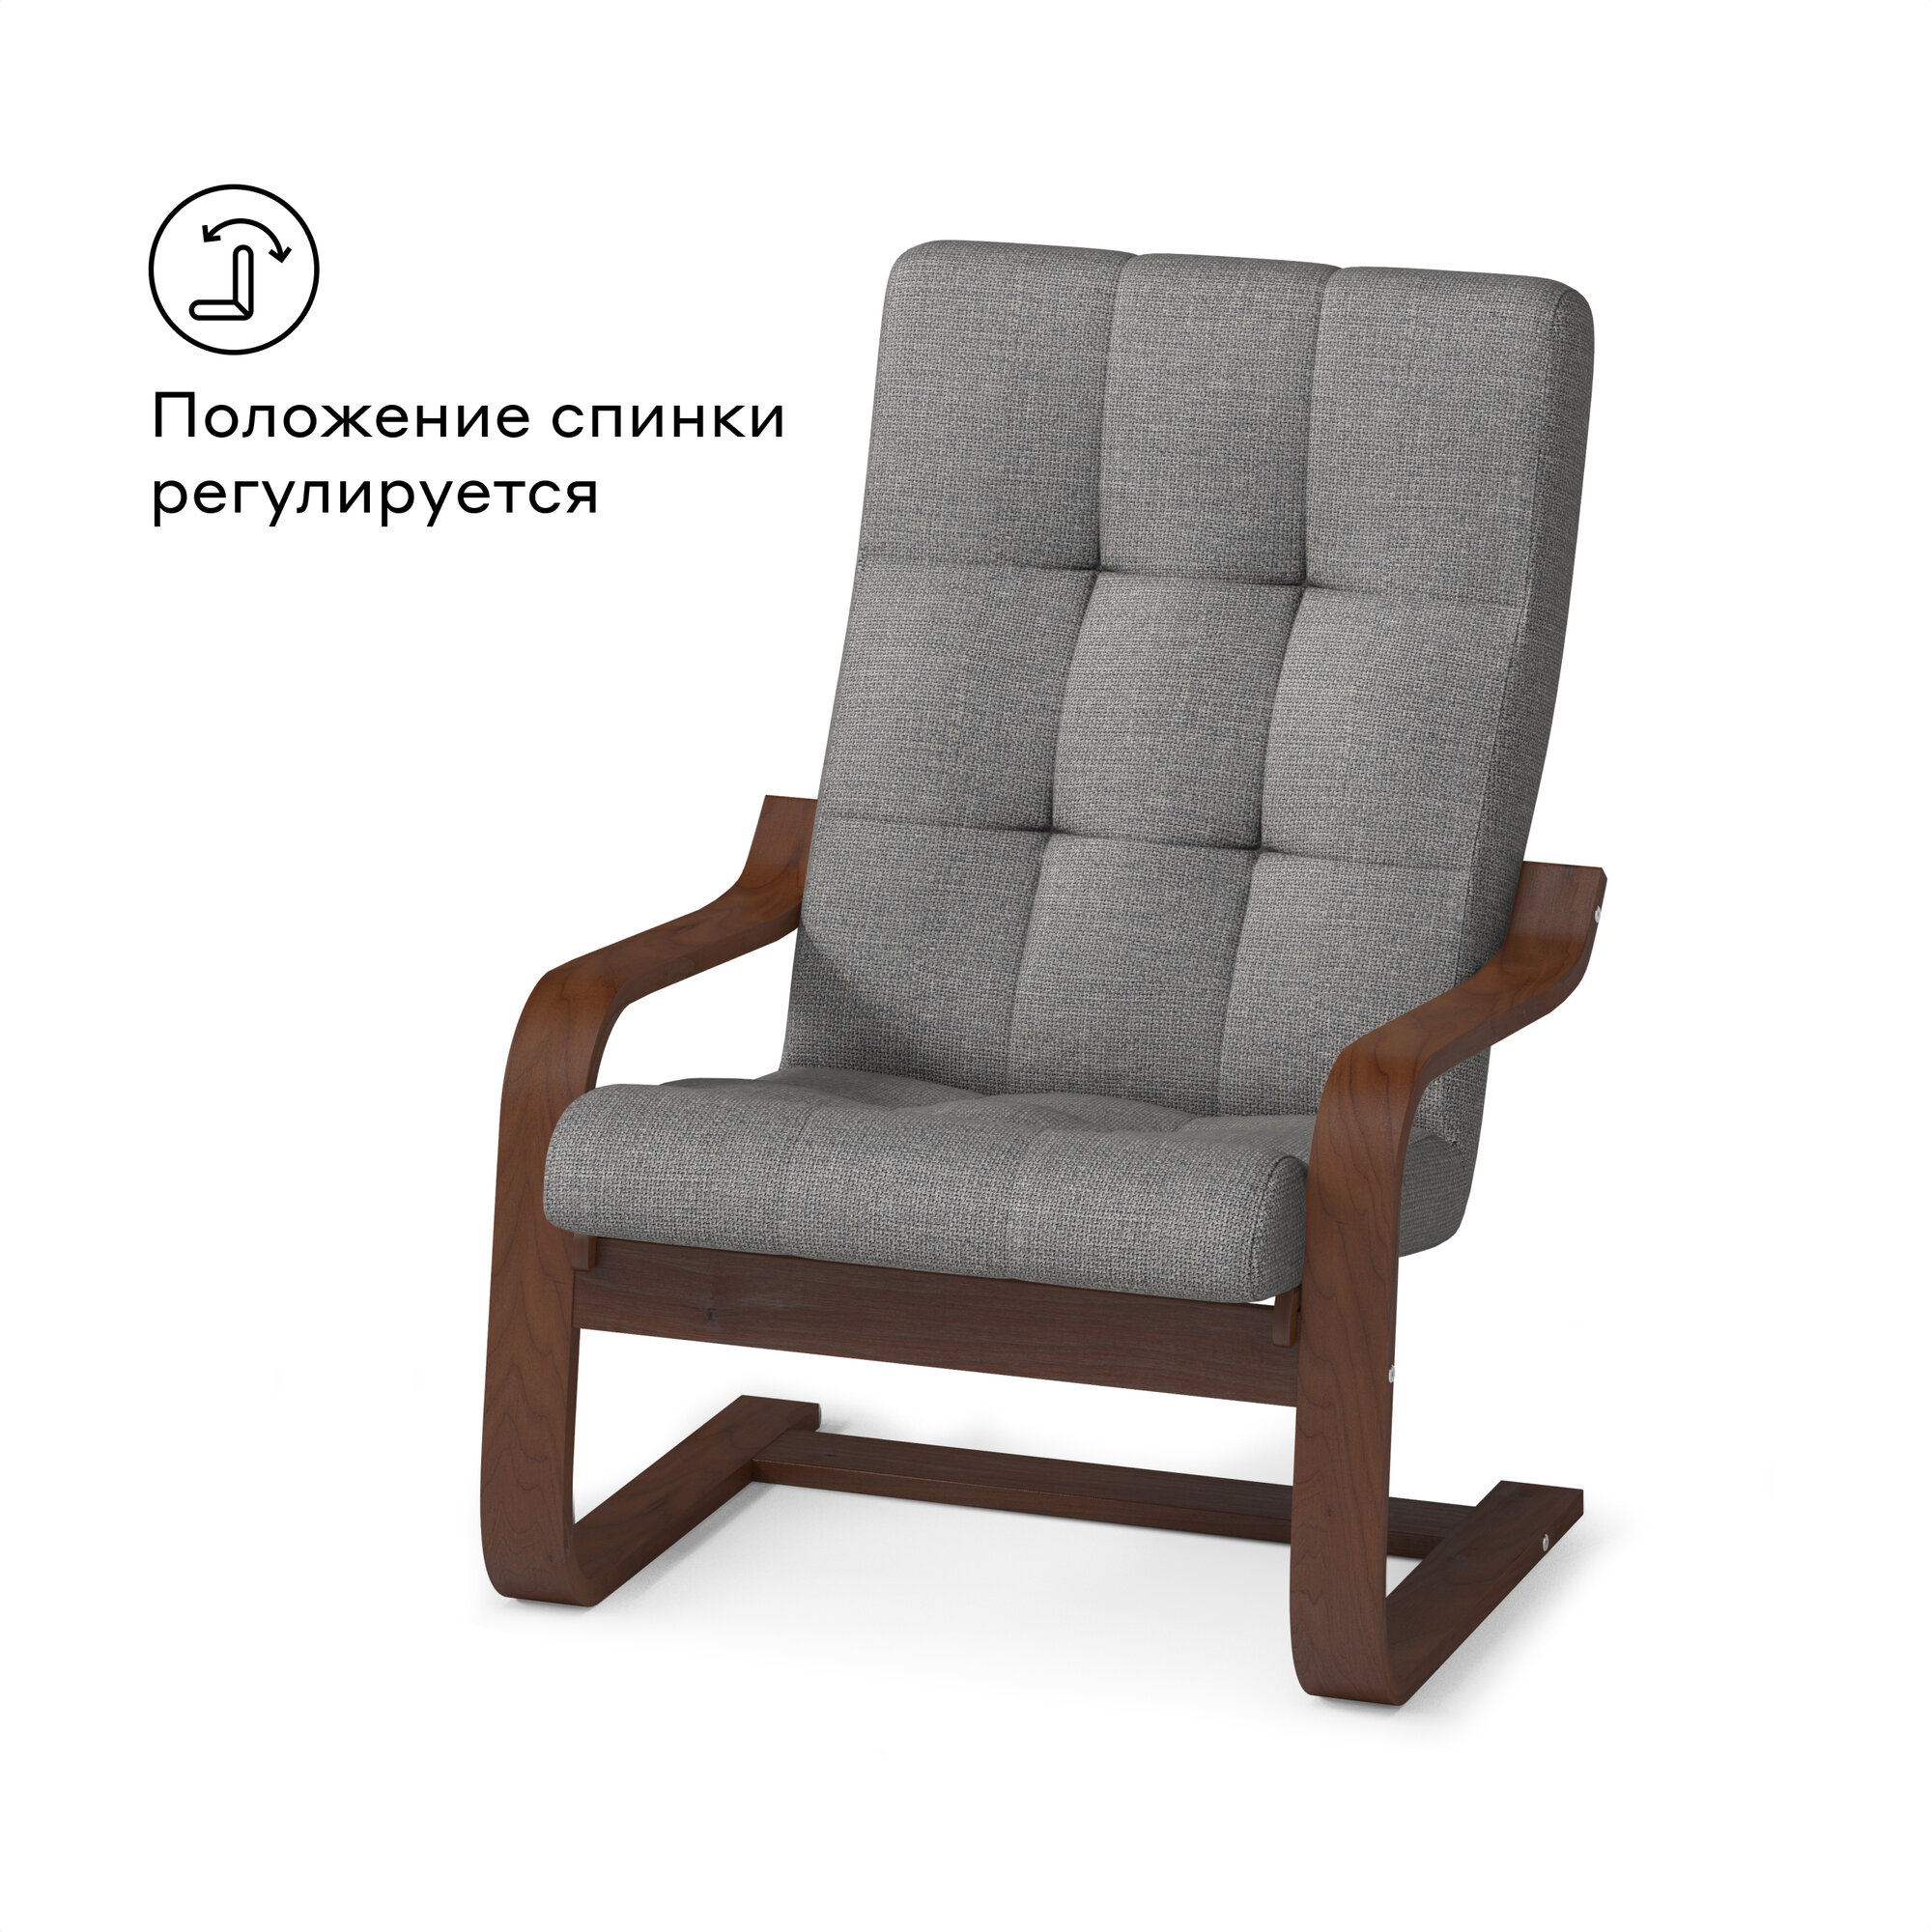 Кресло для отдыха Pragma Okhta с регулируемой спинкой, обивка: текстиль, коричневый/серый